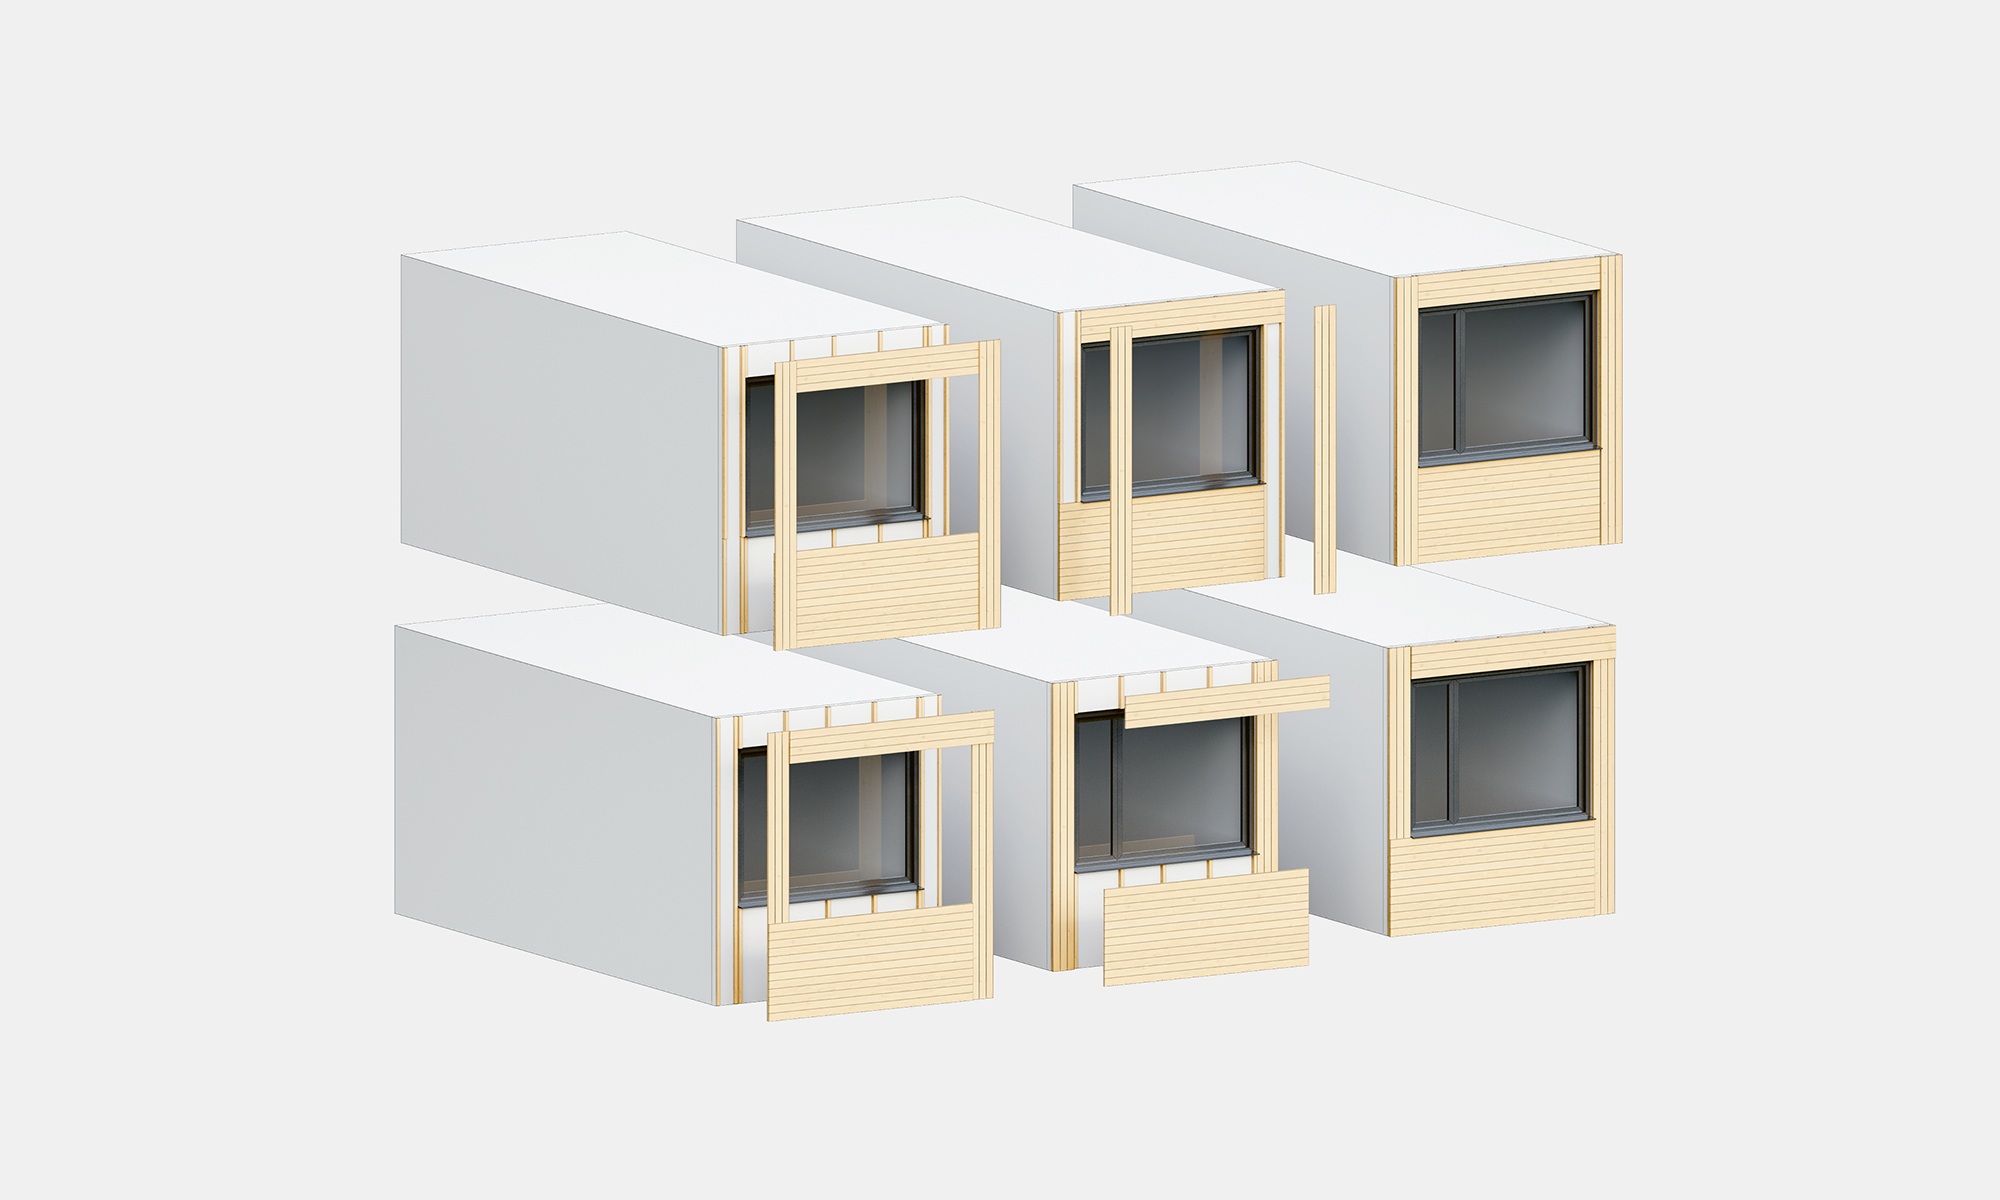 Eléments de façade avec différents agencements et des matériaux individuels